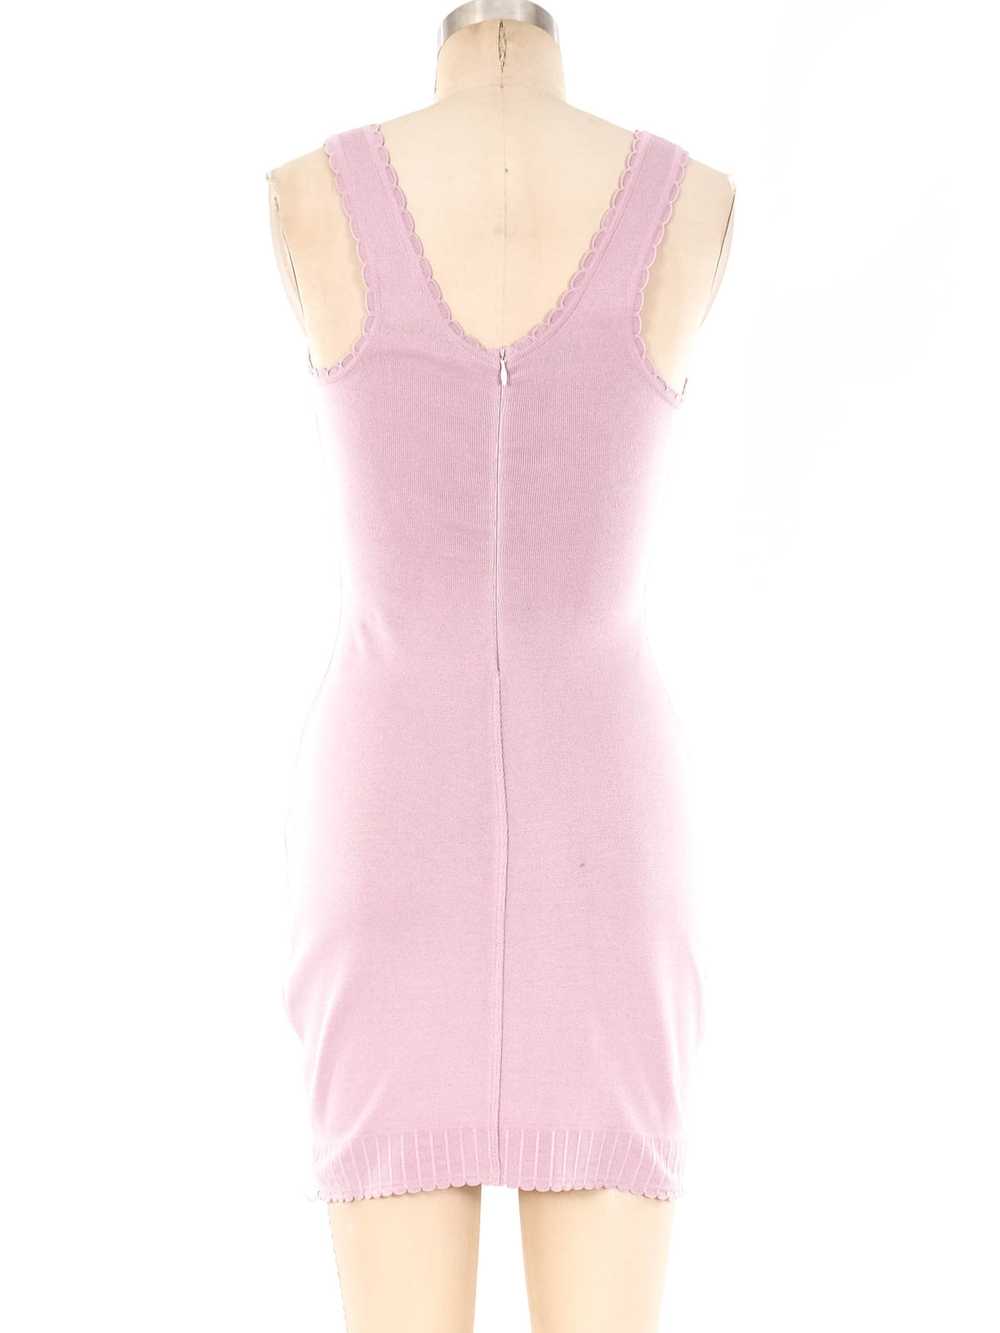 Alaia Lavender Knit Tank Dress - image 4